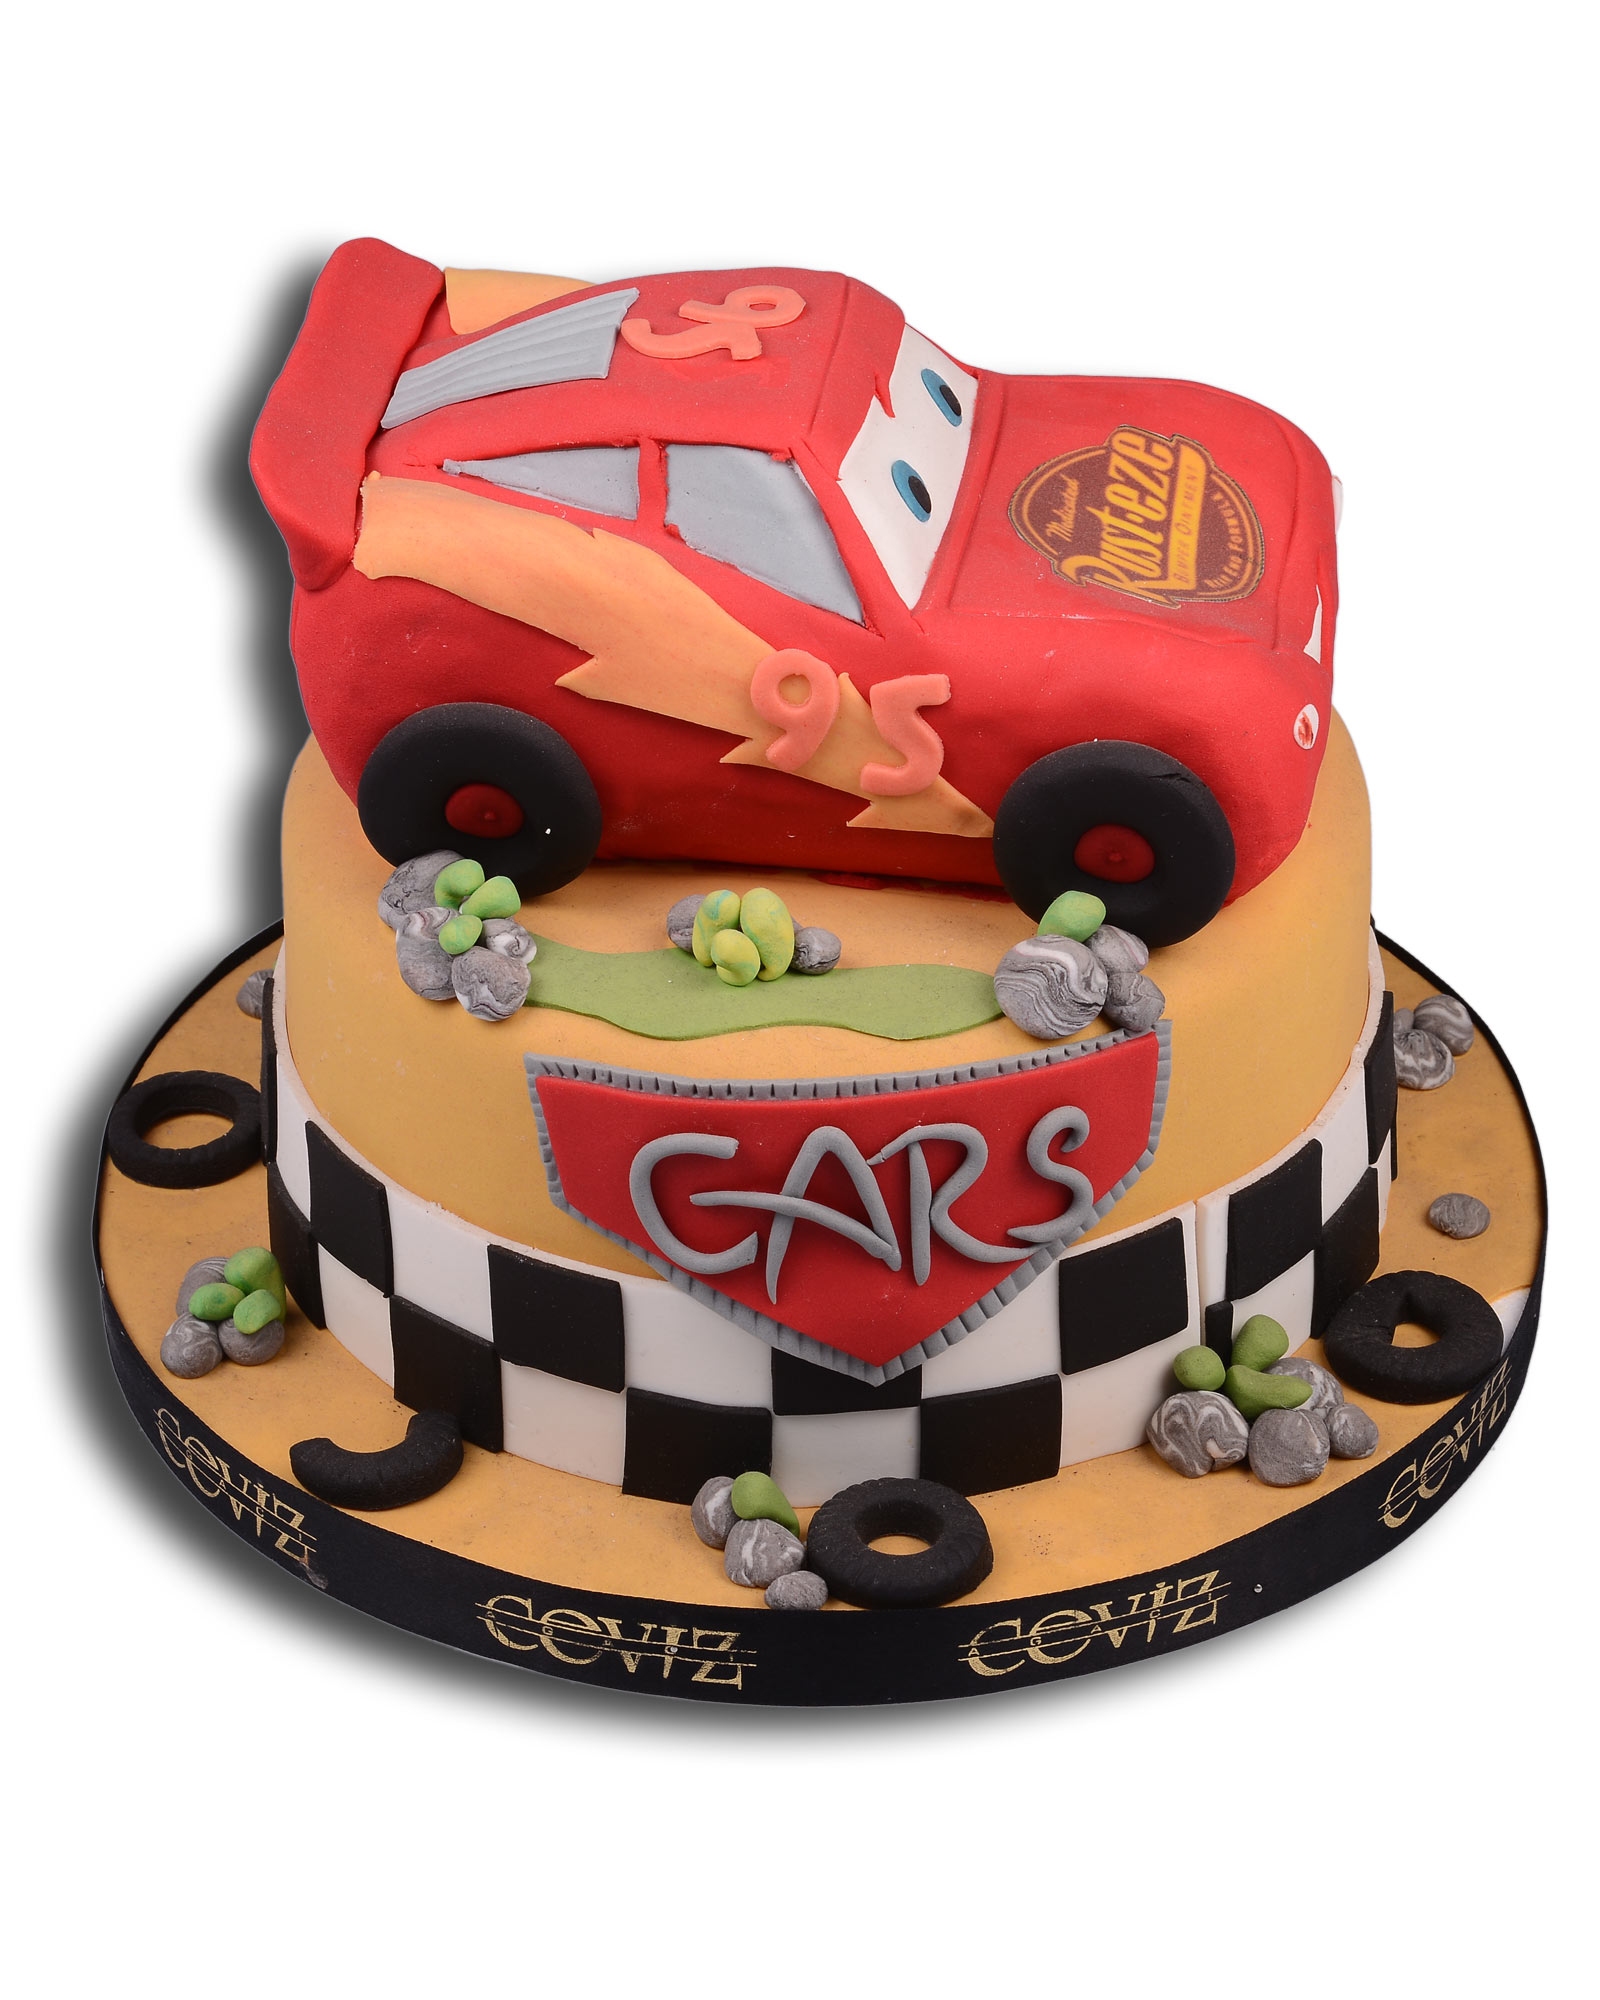 Cars Şimşek McQueen Doğum Günü Pastası  1